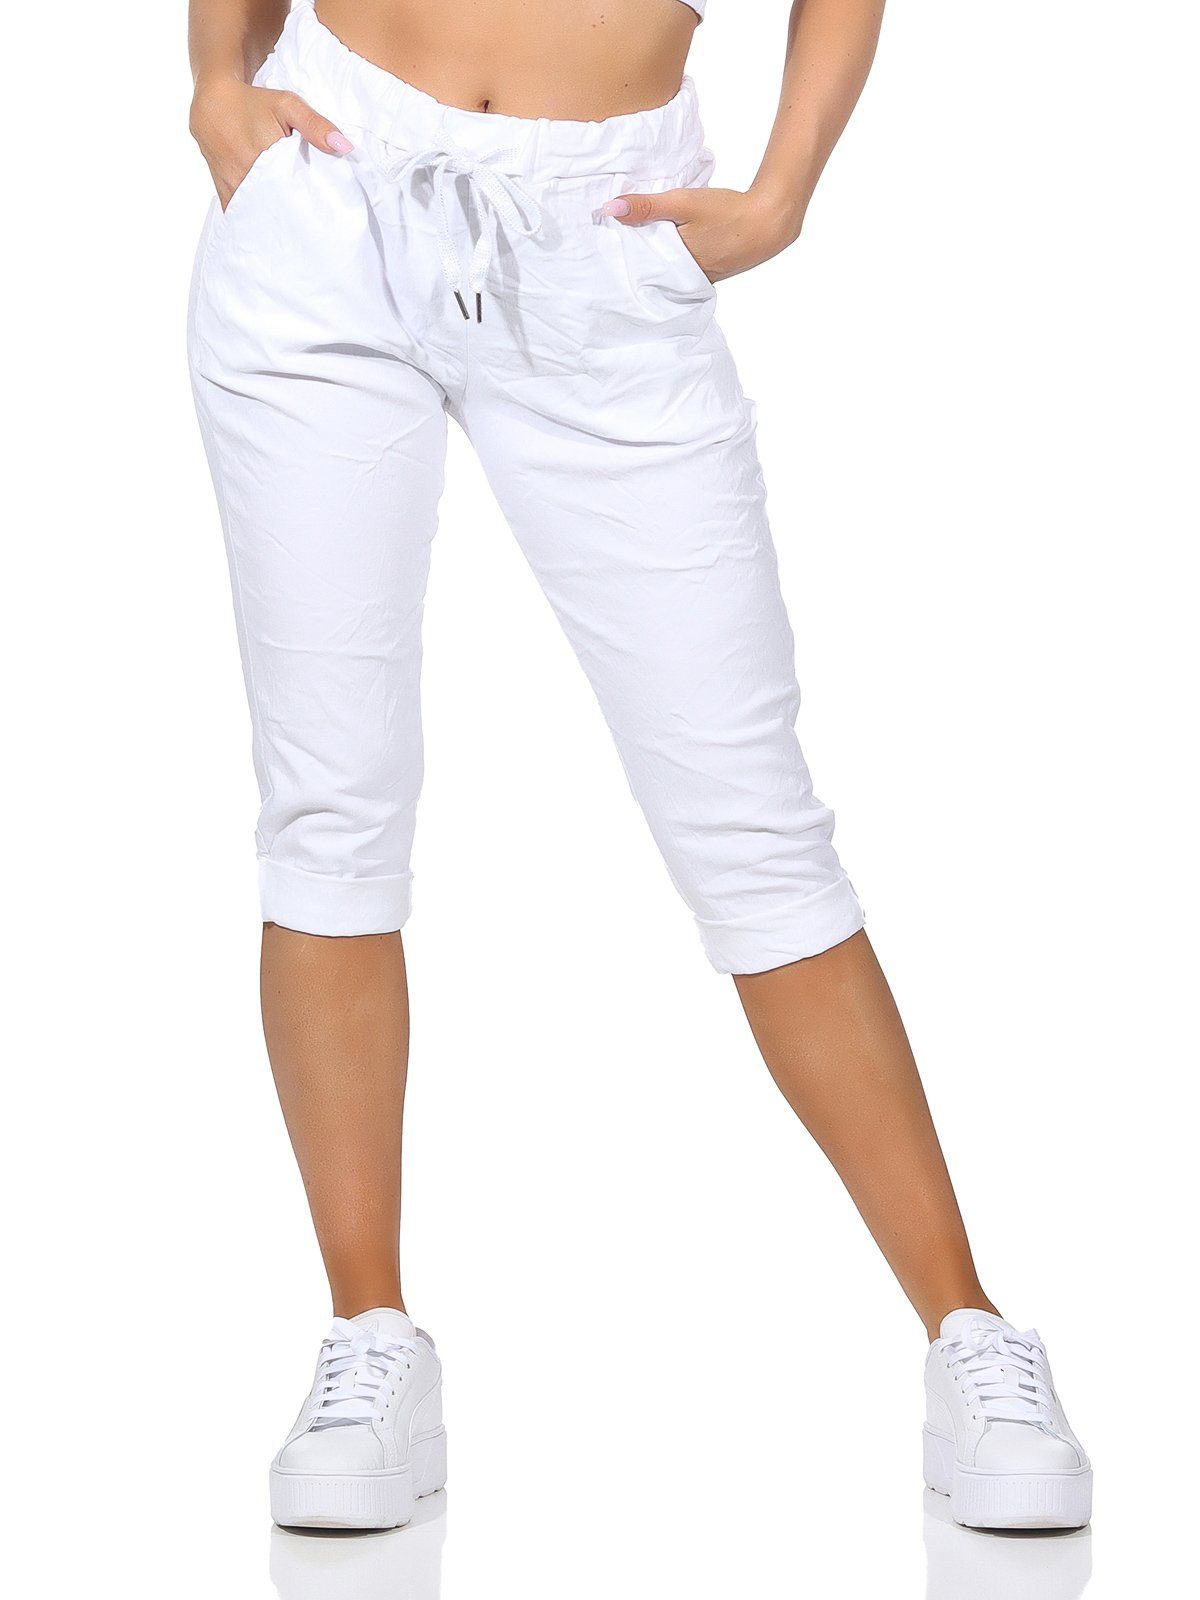 Capri Farben, 36-44 in Taschen Damen Bermuda Aurela Jeans Kordelzug, Damenmode Weiß 7/8-Hose Kurze und Hose Sommerhose sommerlichen